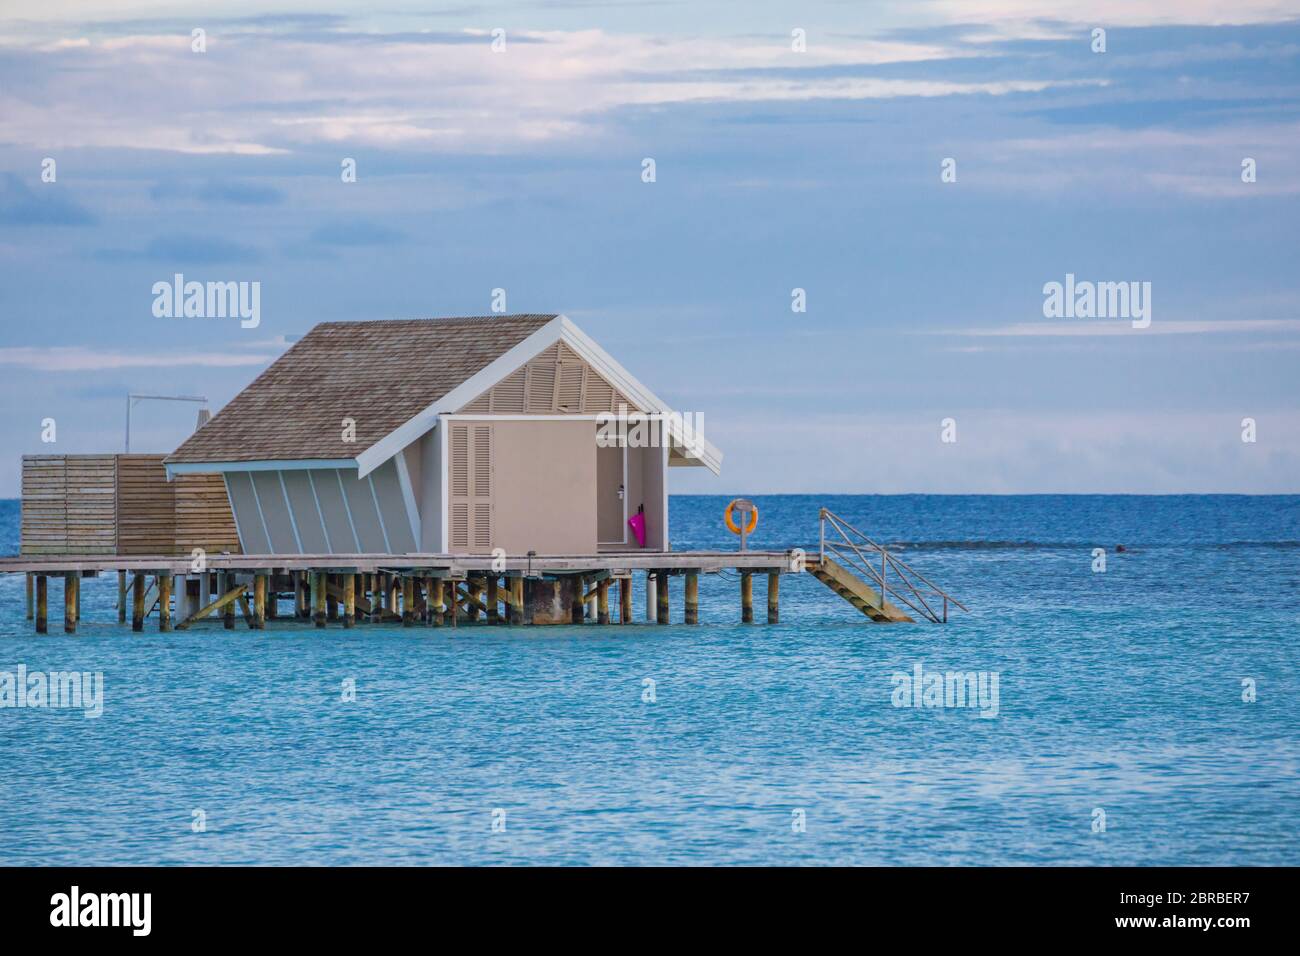 Incroyable coucher de ciel et la réflexion sur une mer calme, plage de luxe Maldives paysage de bungalows sur pilotis. Les paysages exotiques de l'été et de vacances Maison de vacances Banque D'Images